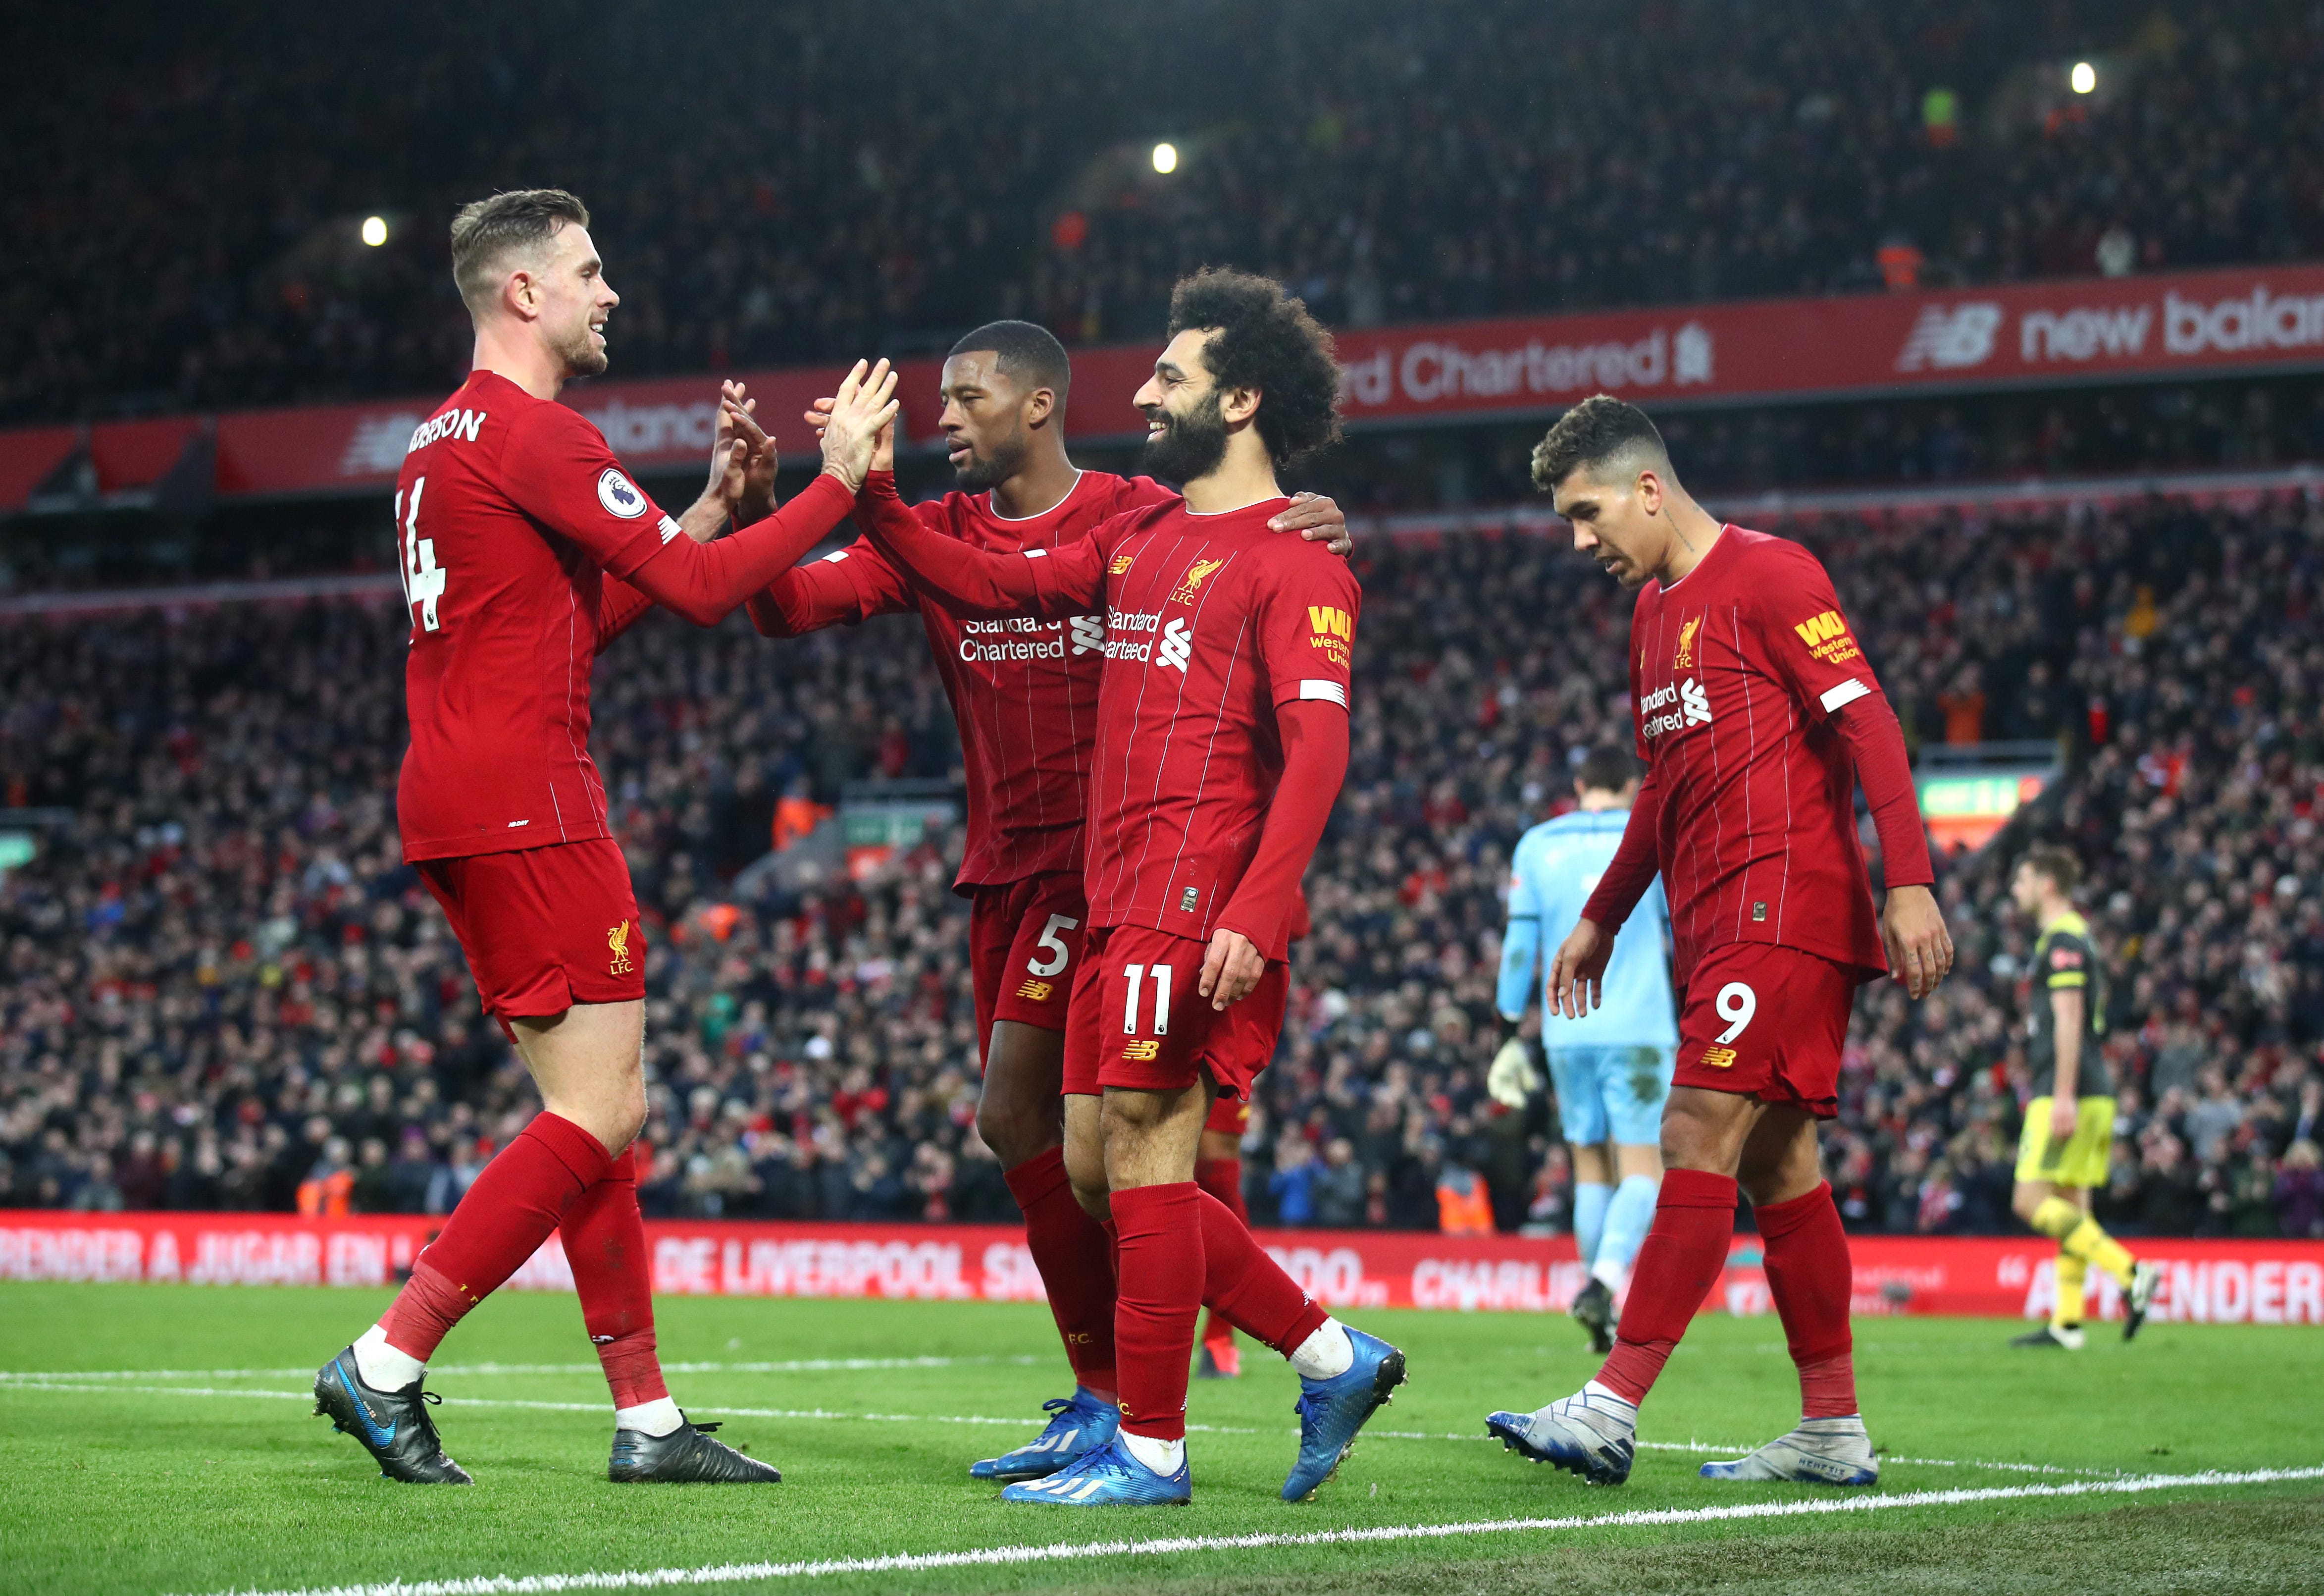 KẾT QUẢ Liverpool 4-0 Southampton: Salah tỏa sáng, Liverpool ngày càng gần chức vô địch